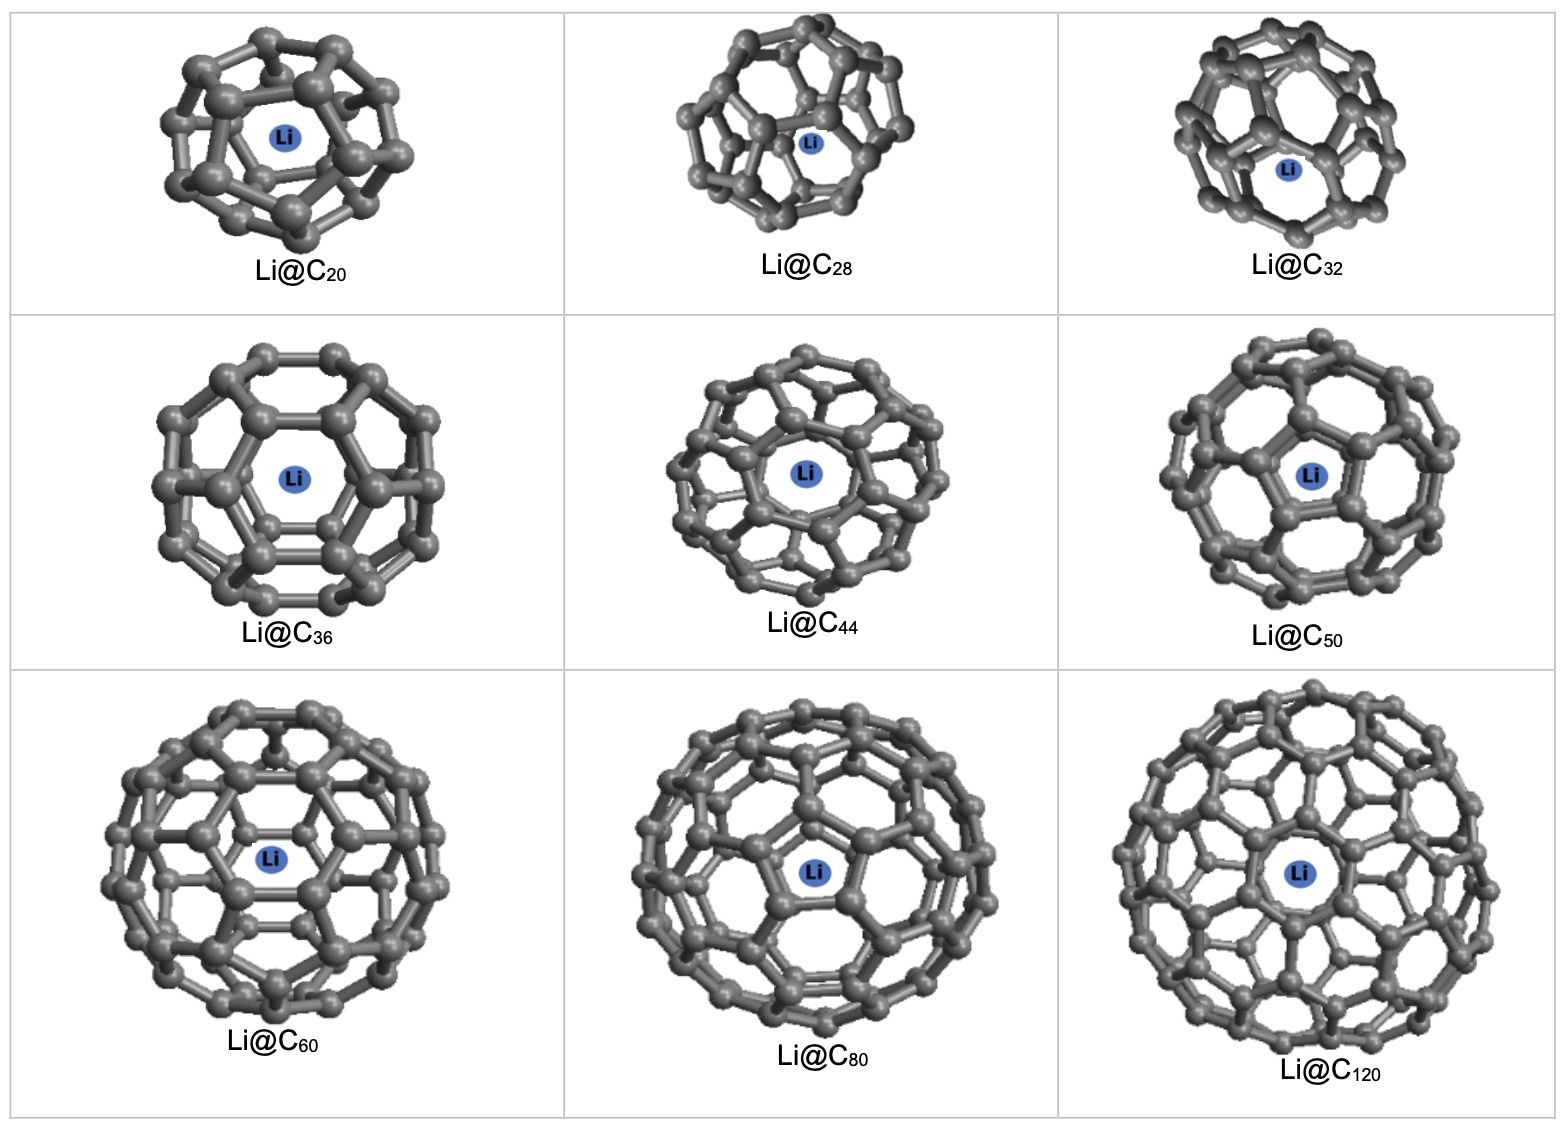 Storage of a Li atom in CN fullerenes.